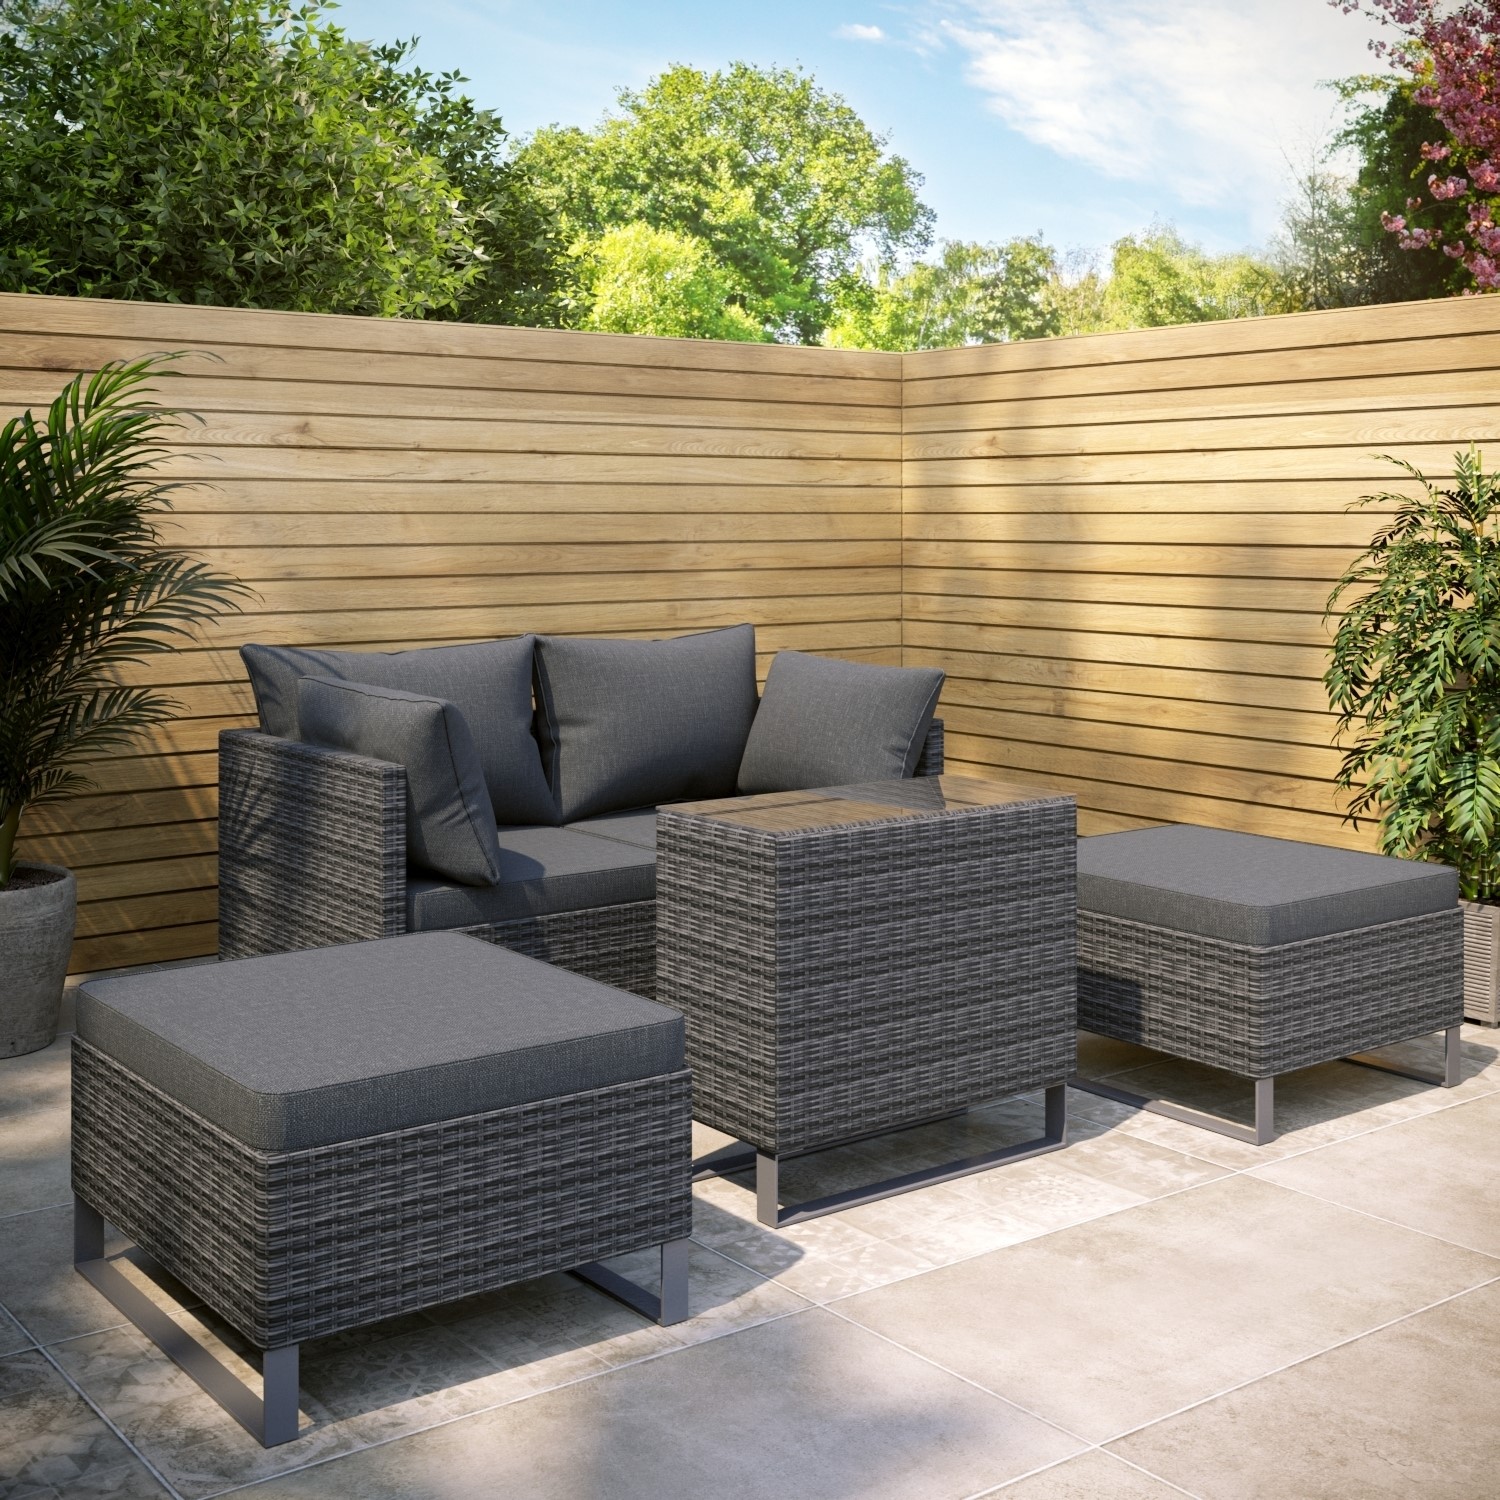 Read more about 4 seater grey modular rattan garden sun lounger set with table como